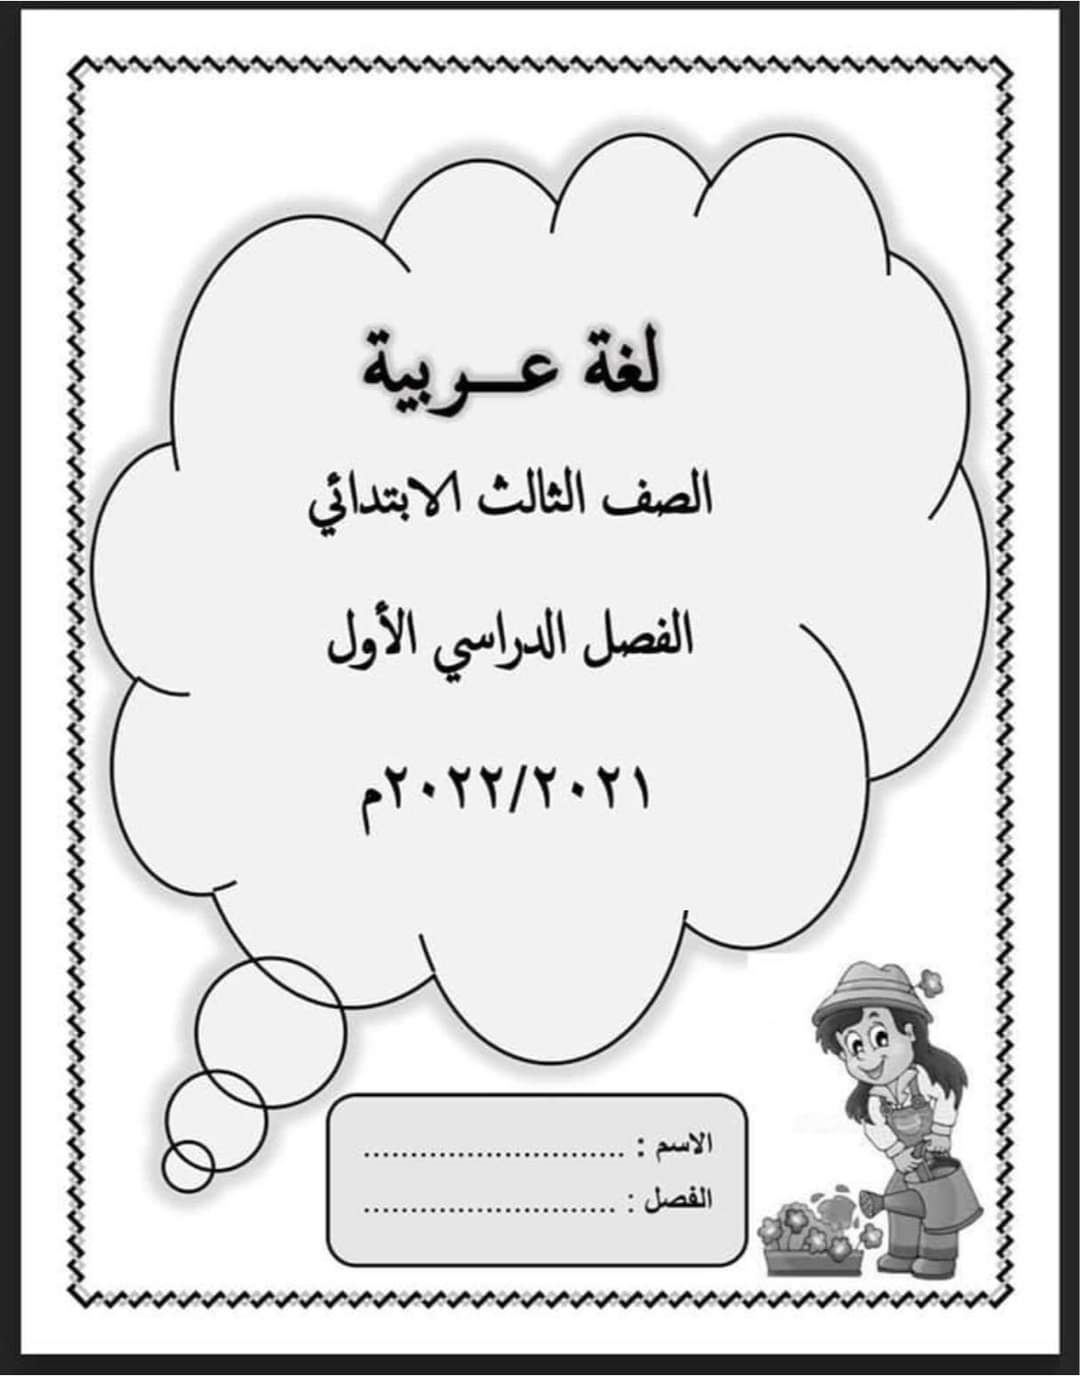 مذكرة اللغة العربية للصف الثالث الابتدائي - 2021